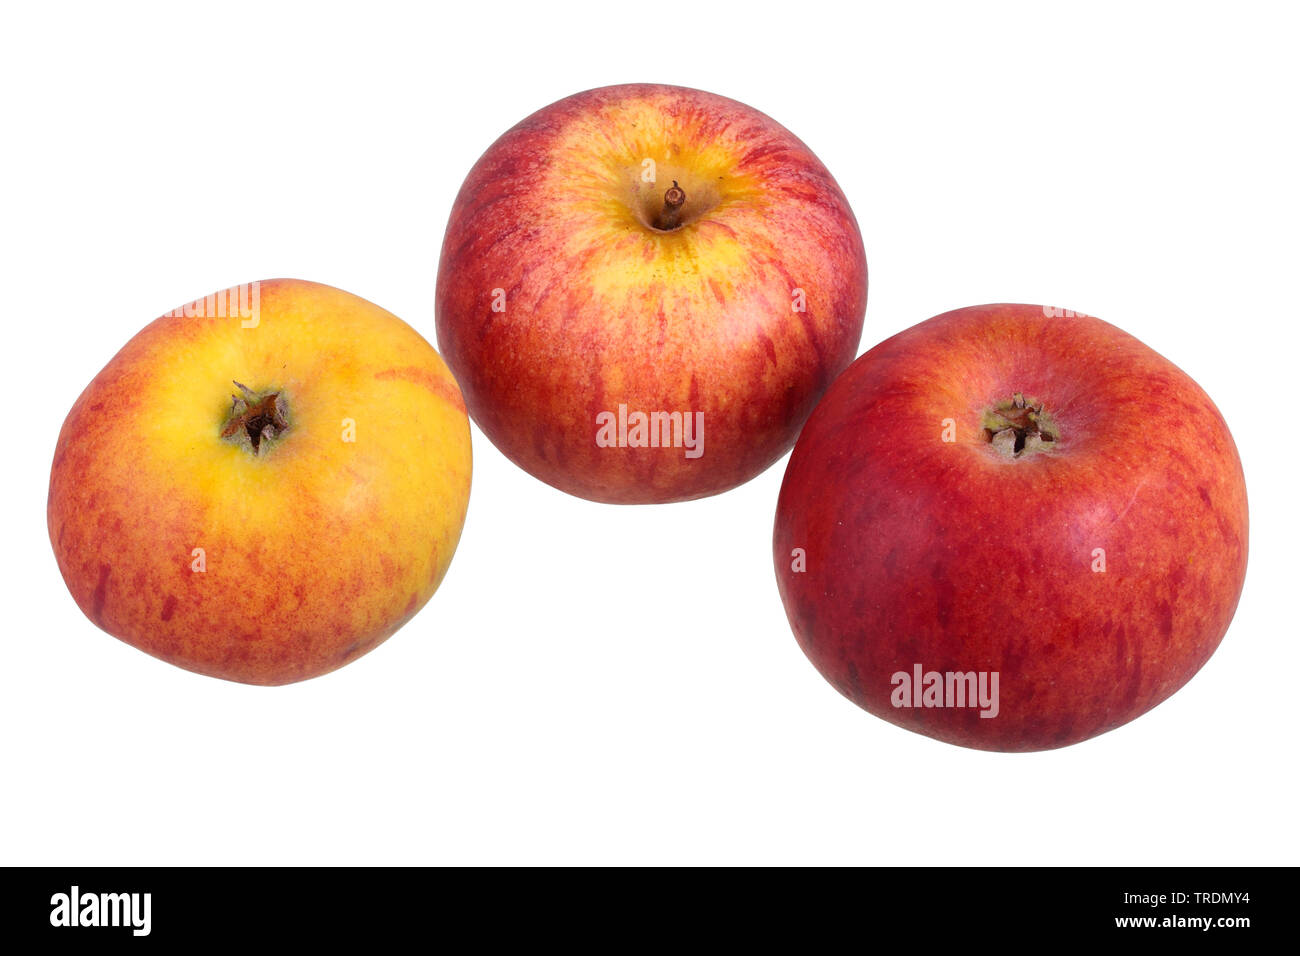 Apple (Malus domestica 'Hessische Tiefenbluete', Malus domestica Hessische Tiefenbluete), mele della cultivar Hessische Tiefenbluete Foto Stock